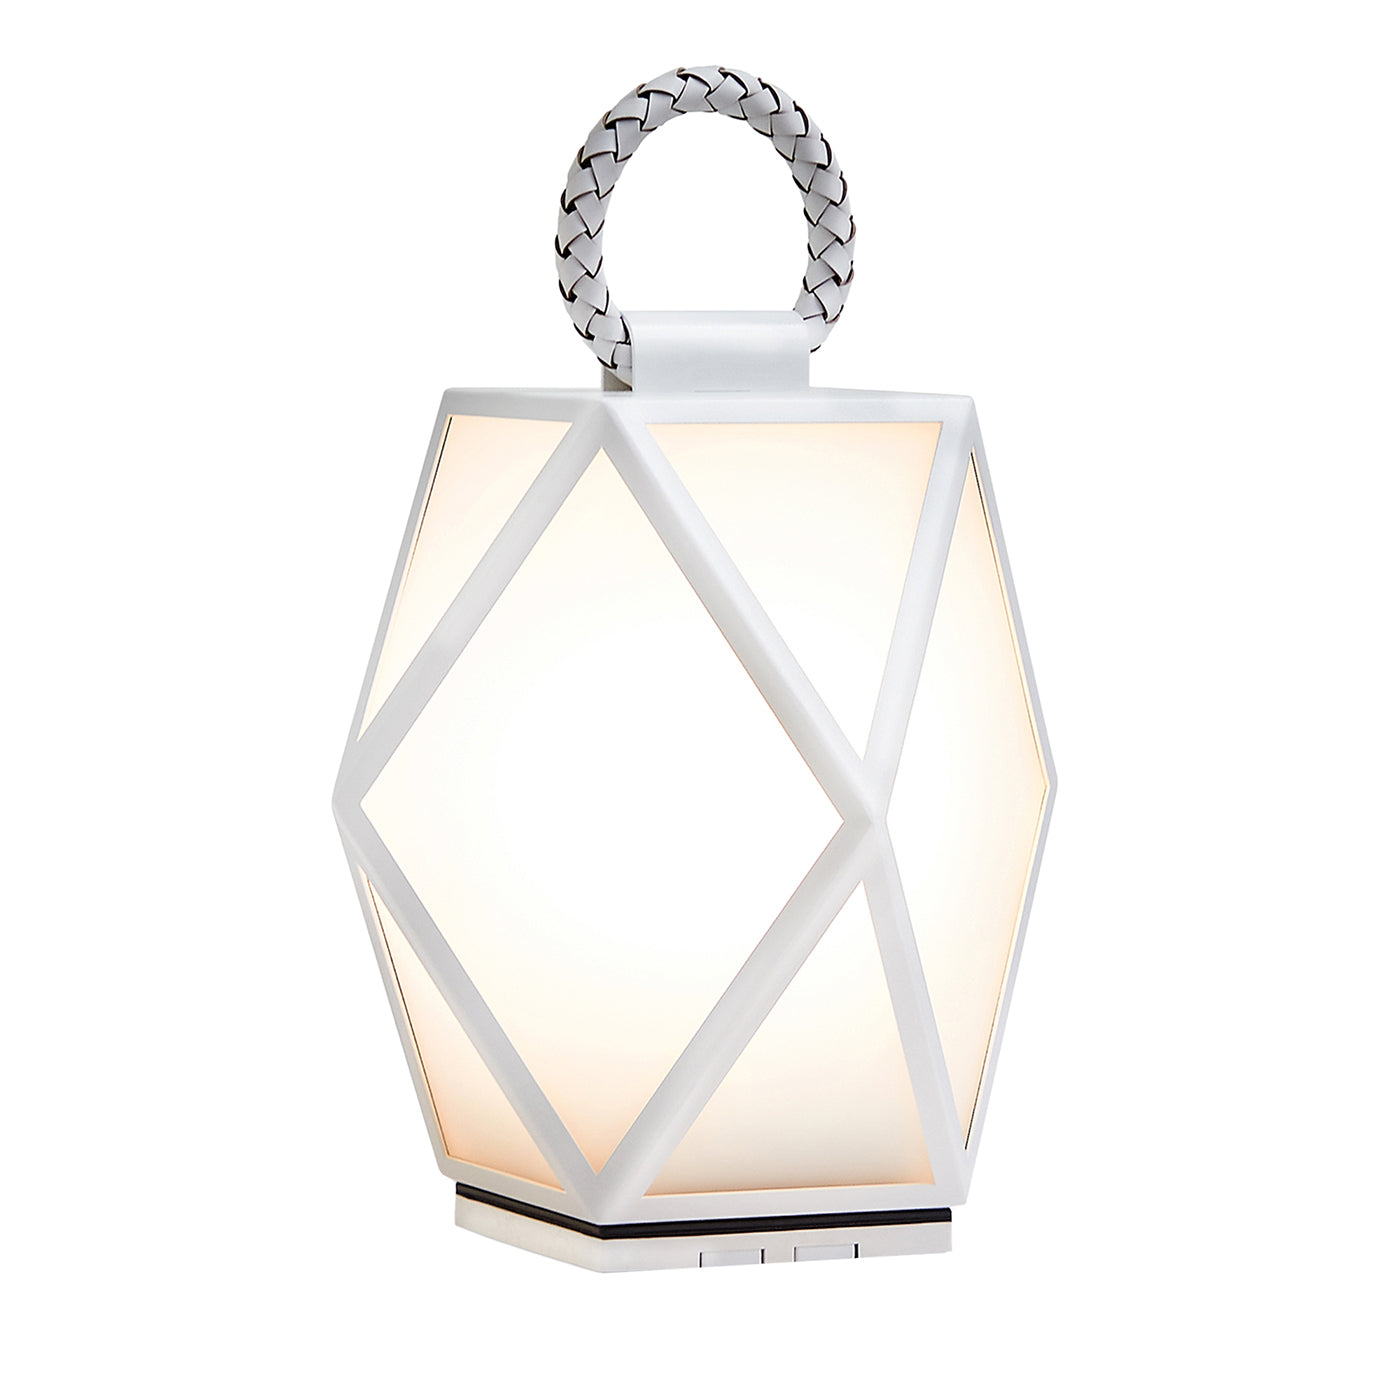 Petite lanterne d'extérieur blanche rechargeable Muse par Tristan Auer - Vue principale